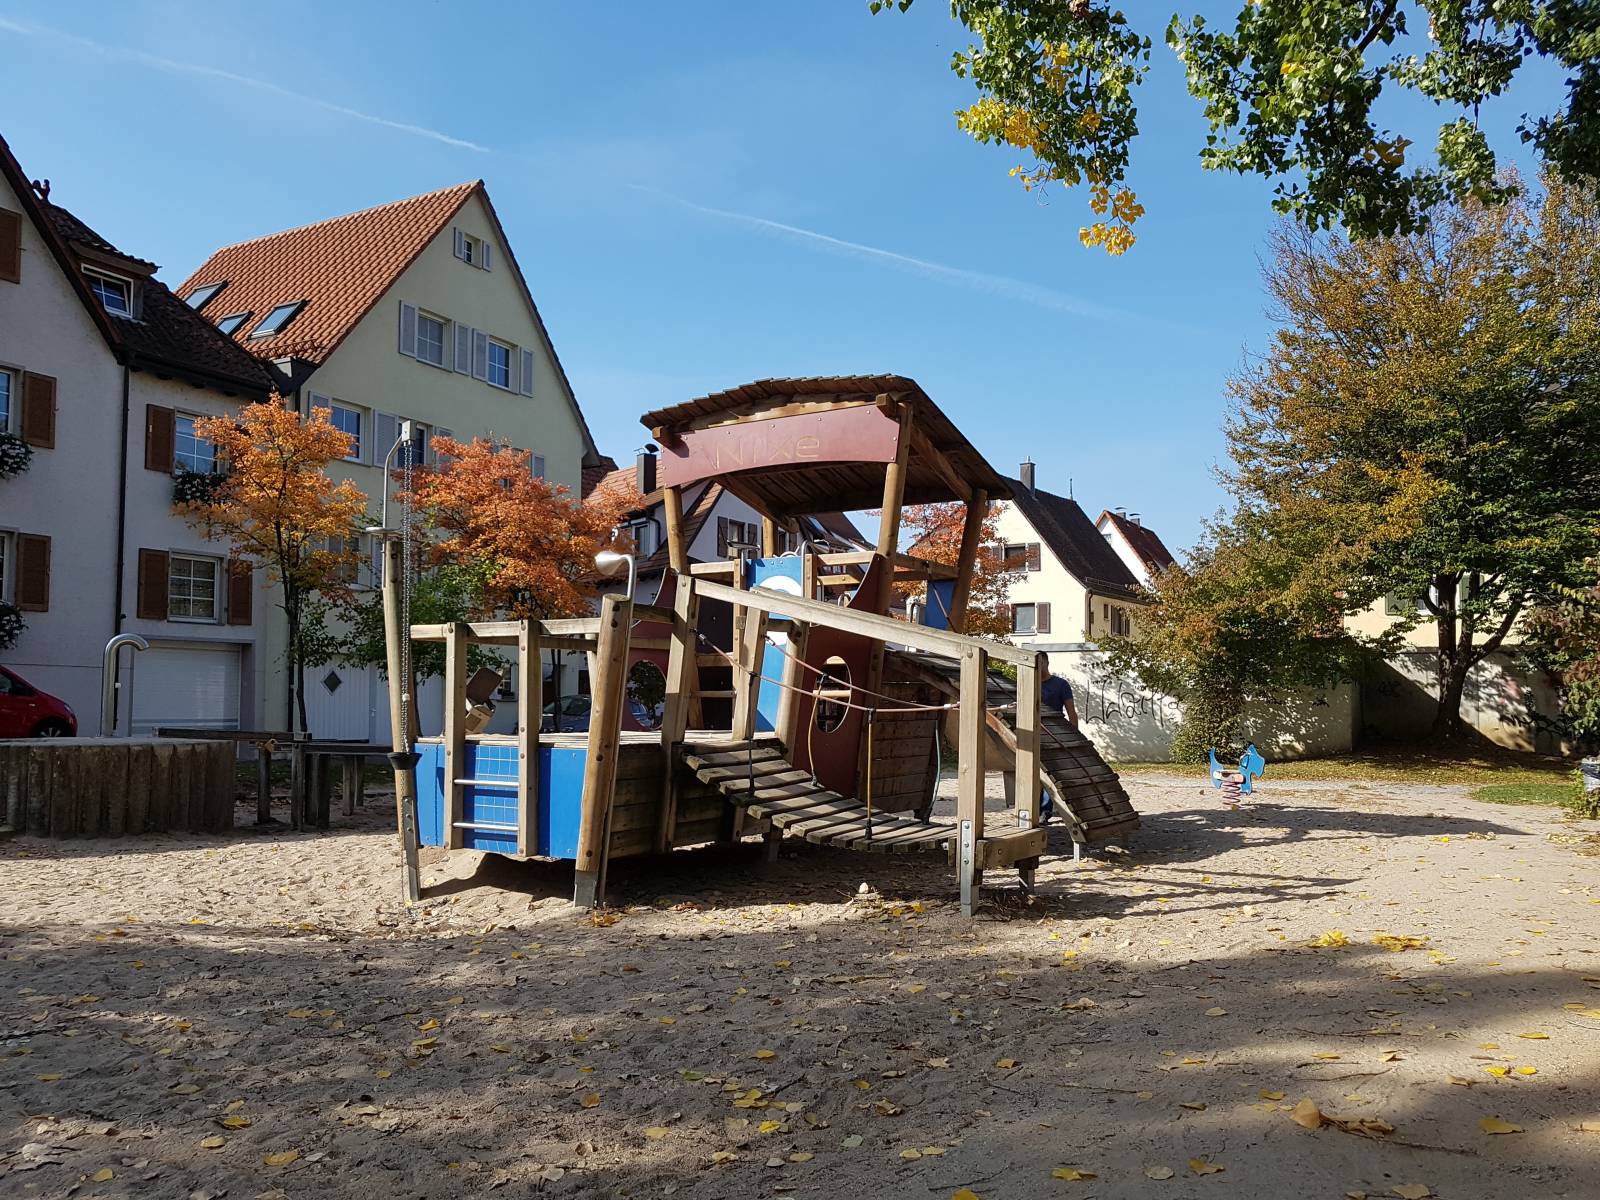 Spielplatz Schiffsspielplatz in Rottenburg am Neckar